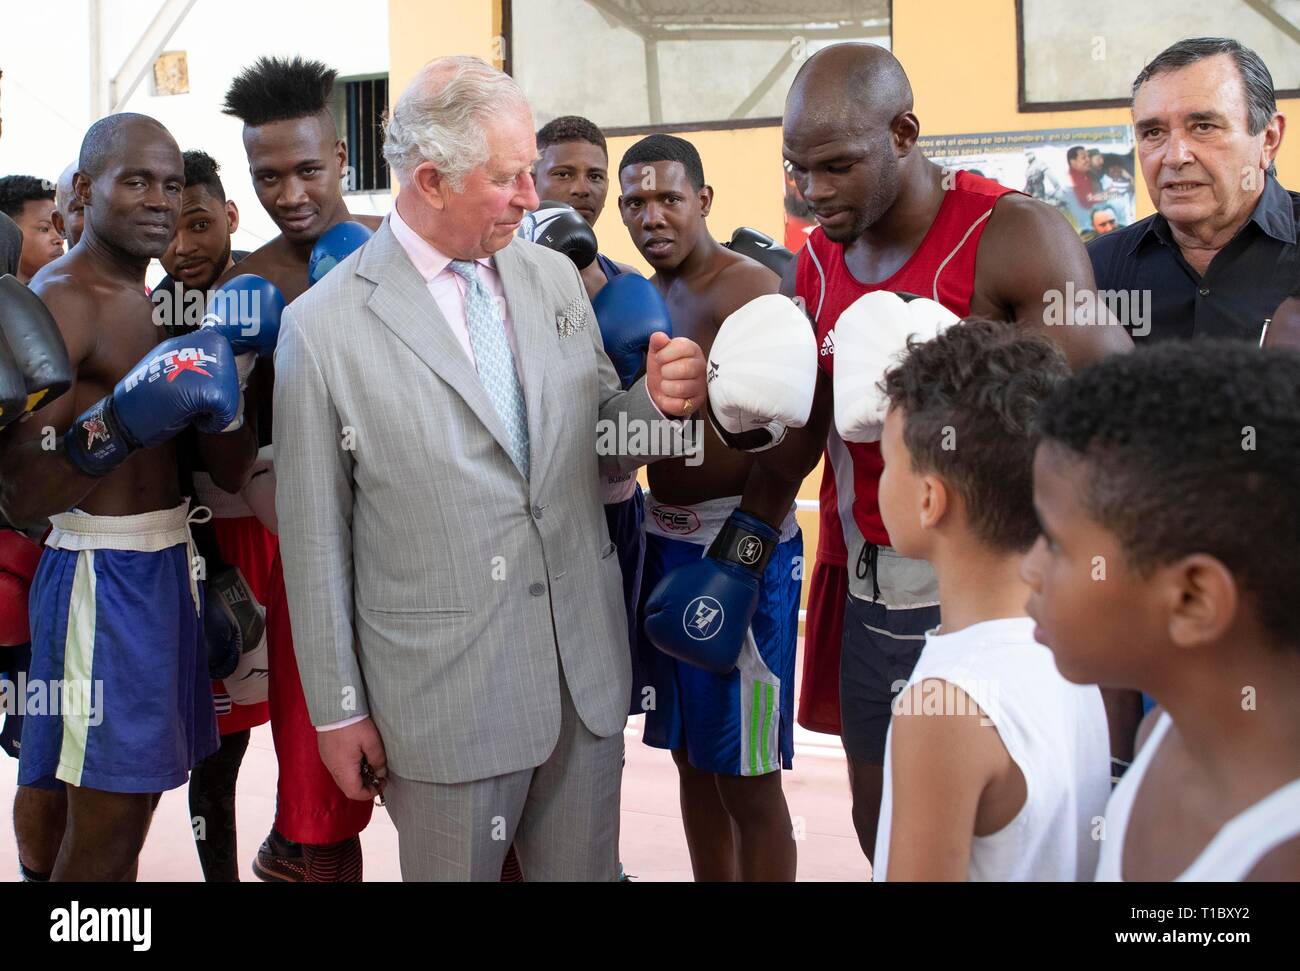 Der Prinz von Wales besucht die Rafael Trejo Boxing Gym in Havanna, Kuba, während eine historische Reise, die feiert die kulturellen Bindungen zwischen dem Vereinigten Königreich und den kommunistischen Staat. Stockfoto